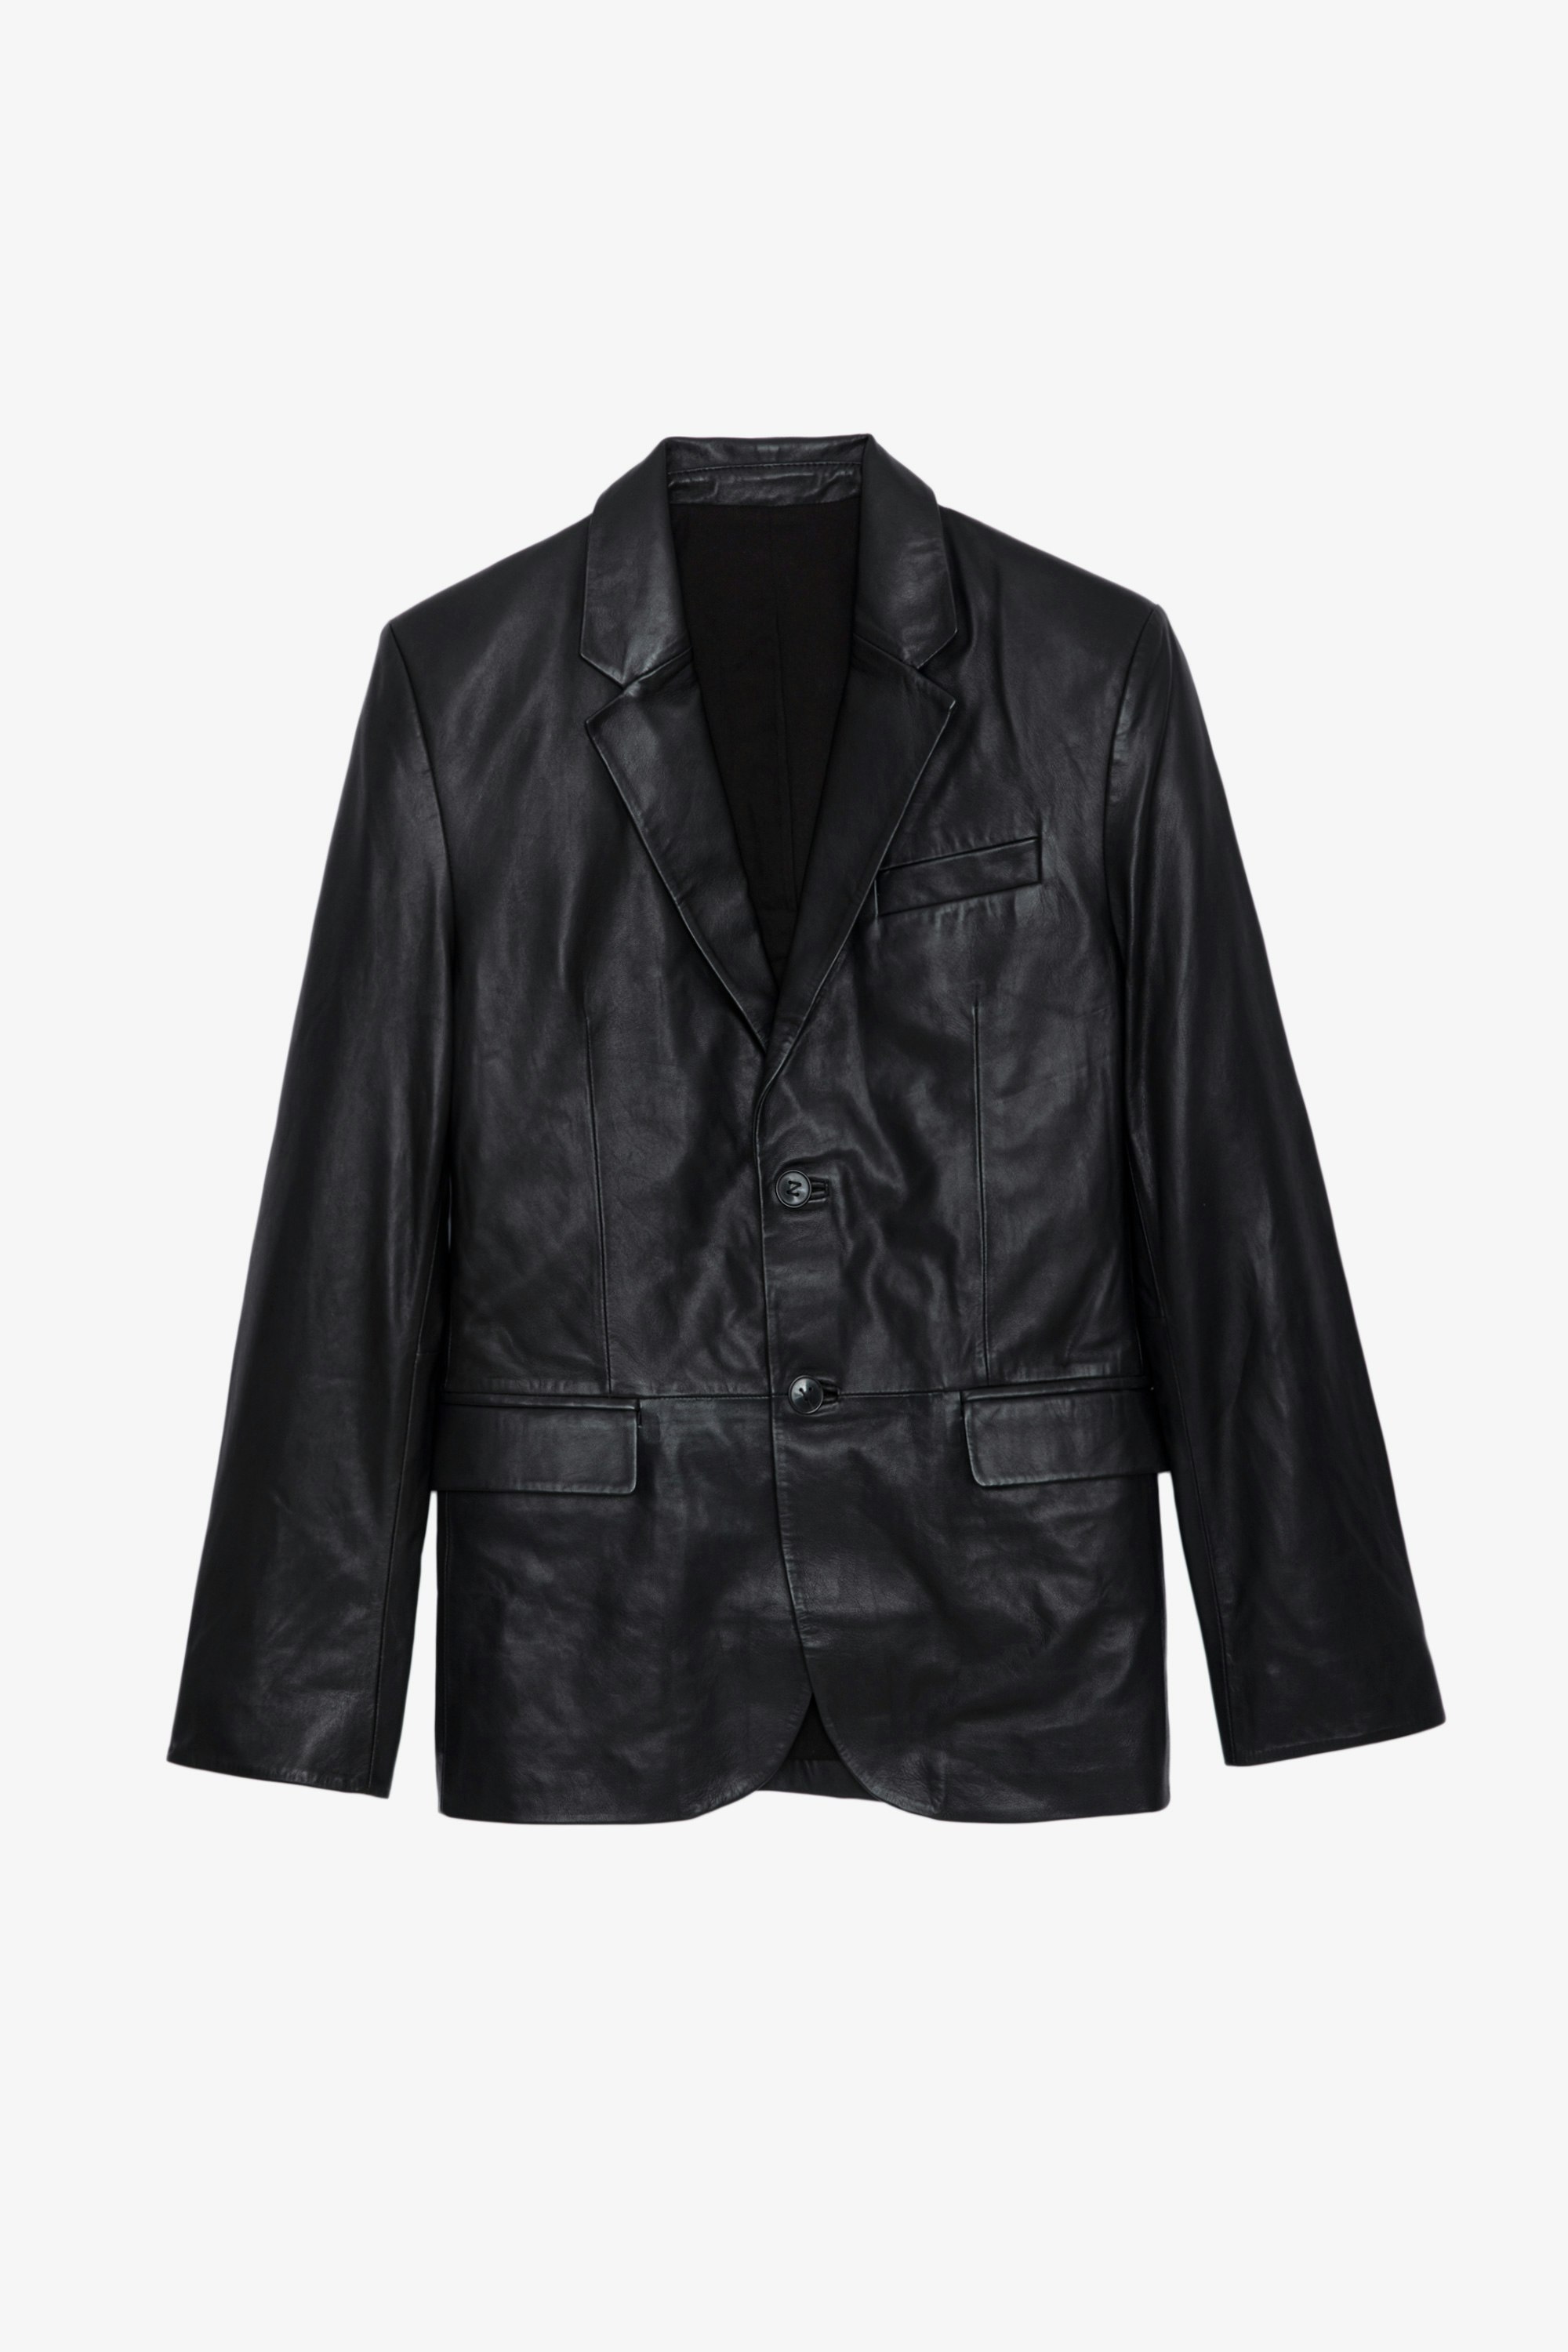 Valfried Leather Blazer - Black leather blazer.